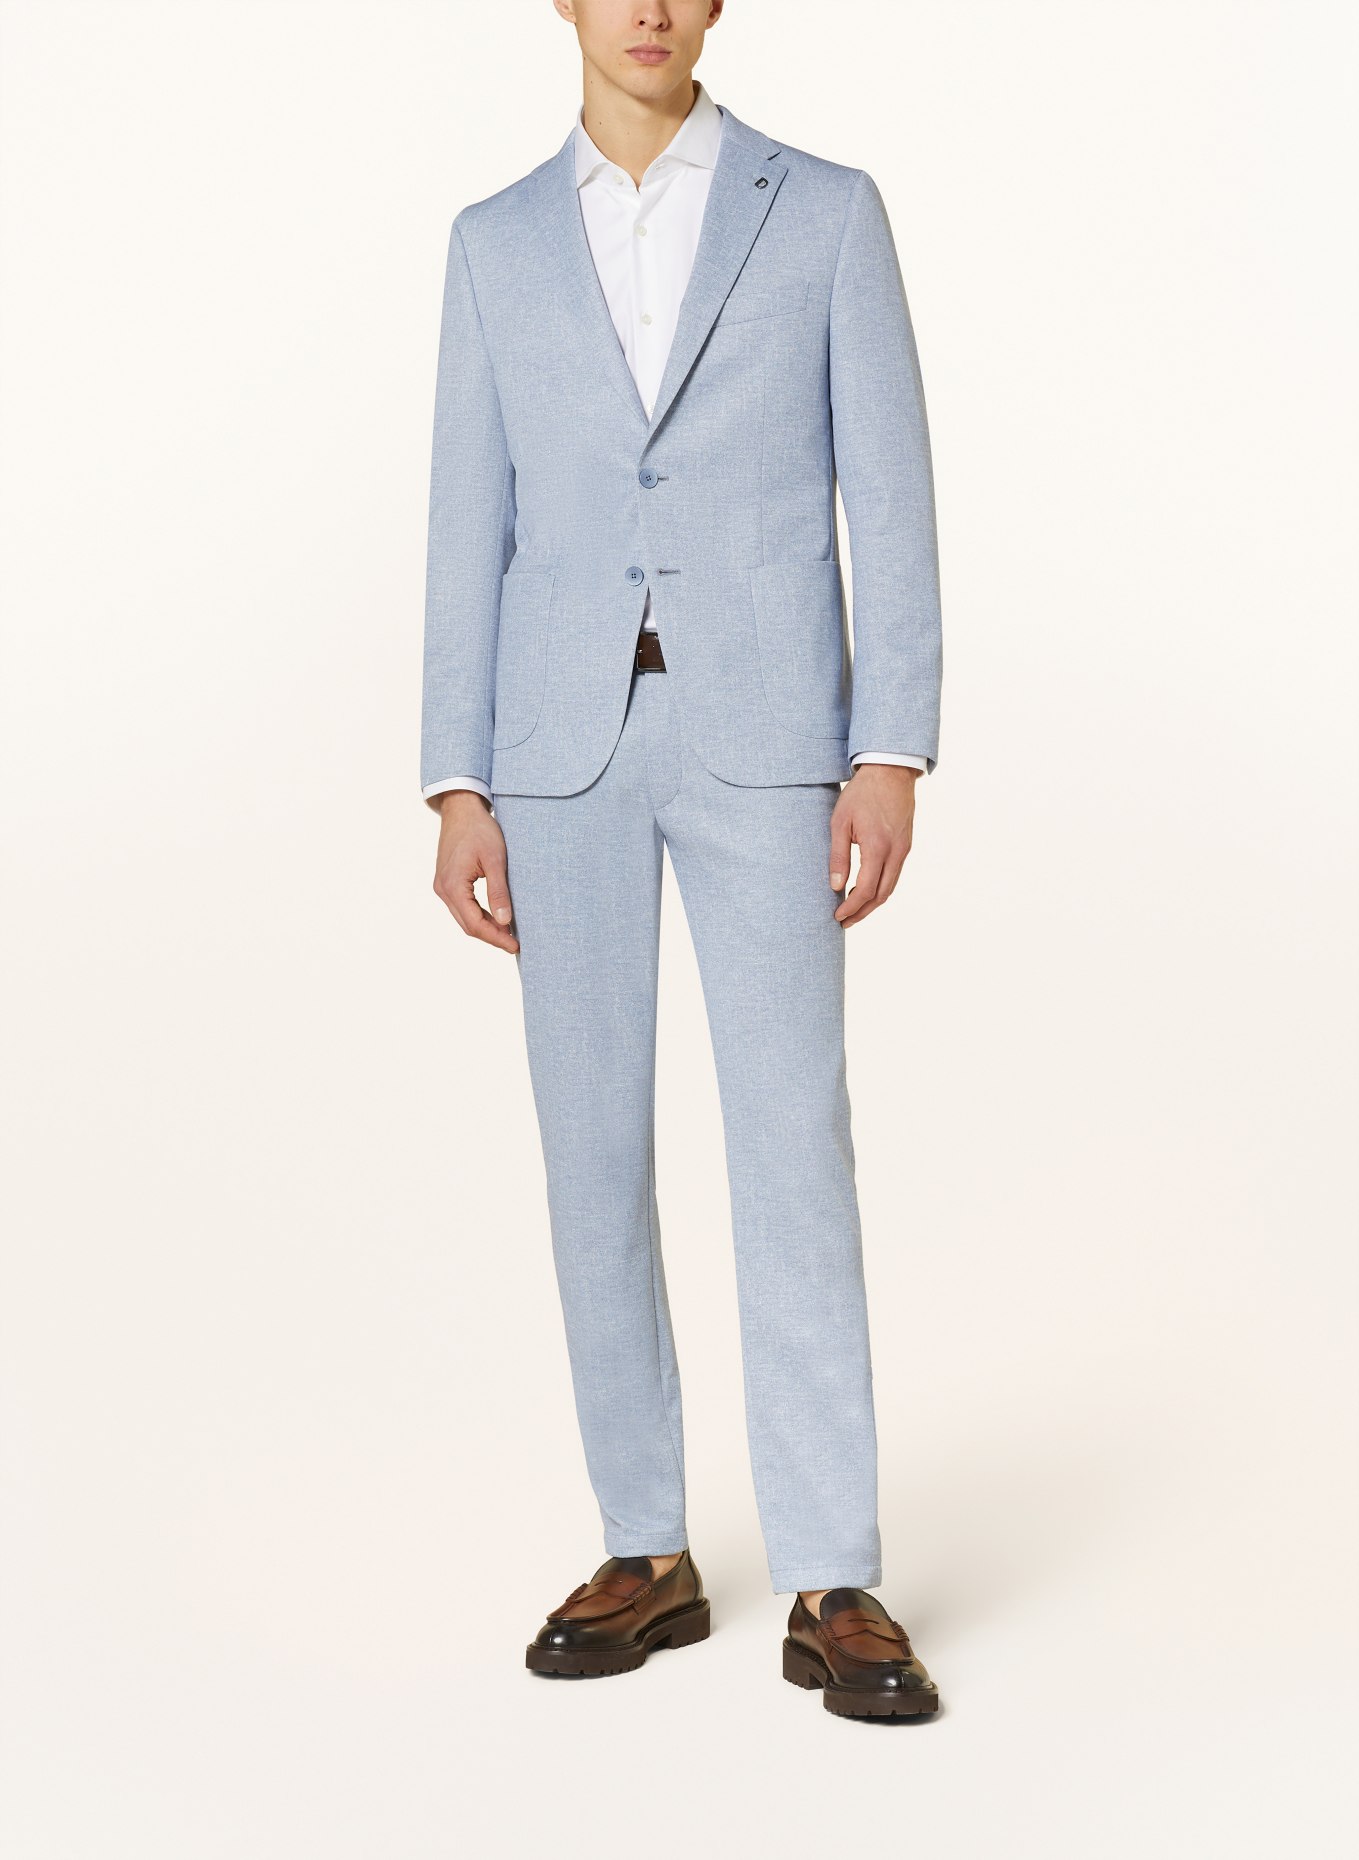 DIGEL Suit jacket EDWARD regular fit in jersey, Color: LIGHT BLUE (Image 2)